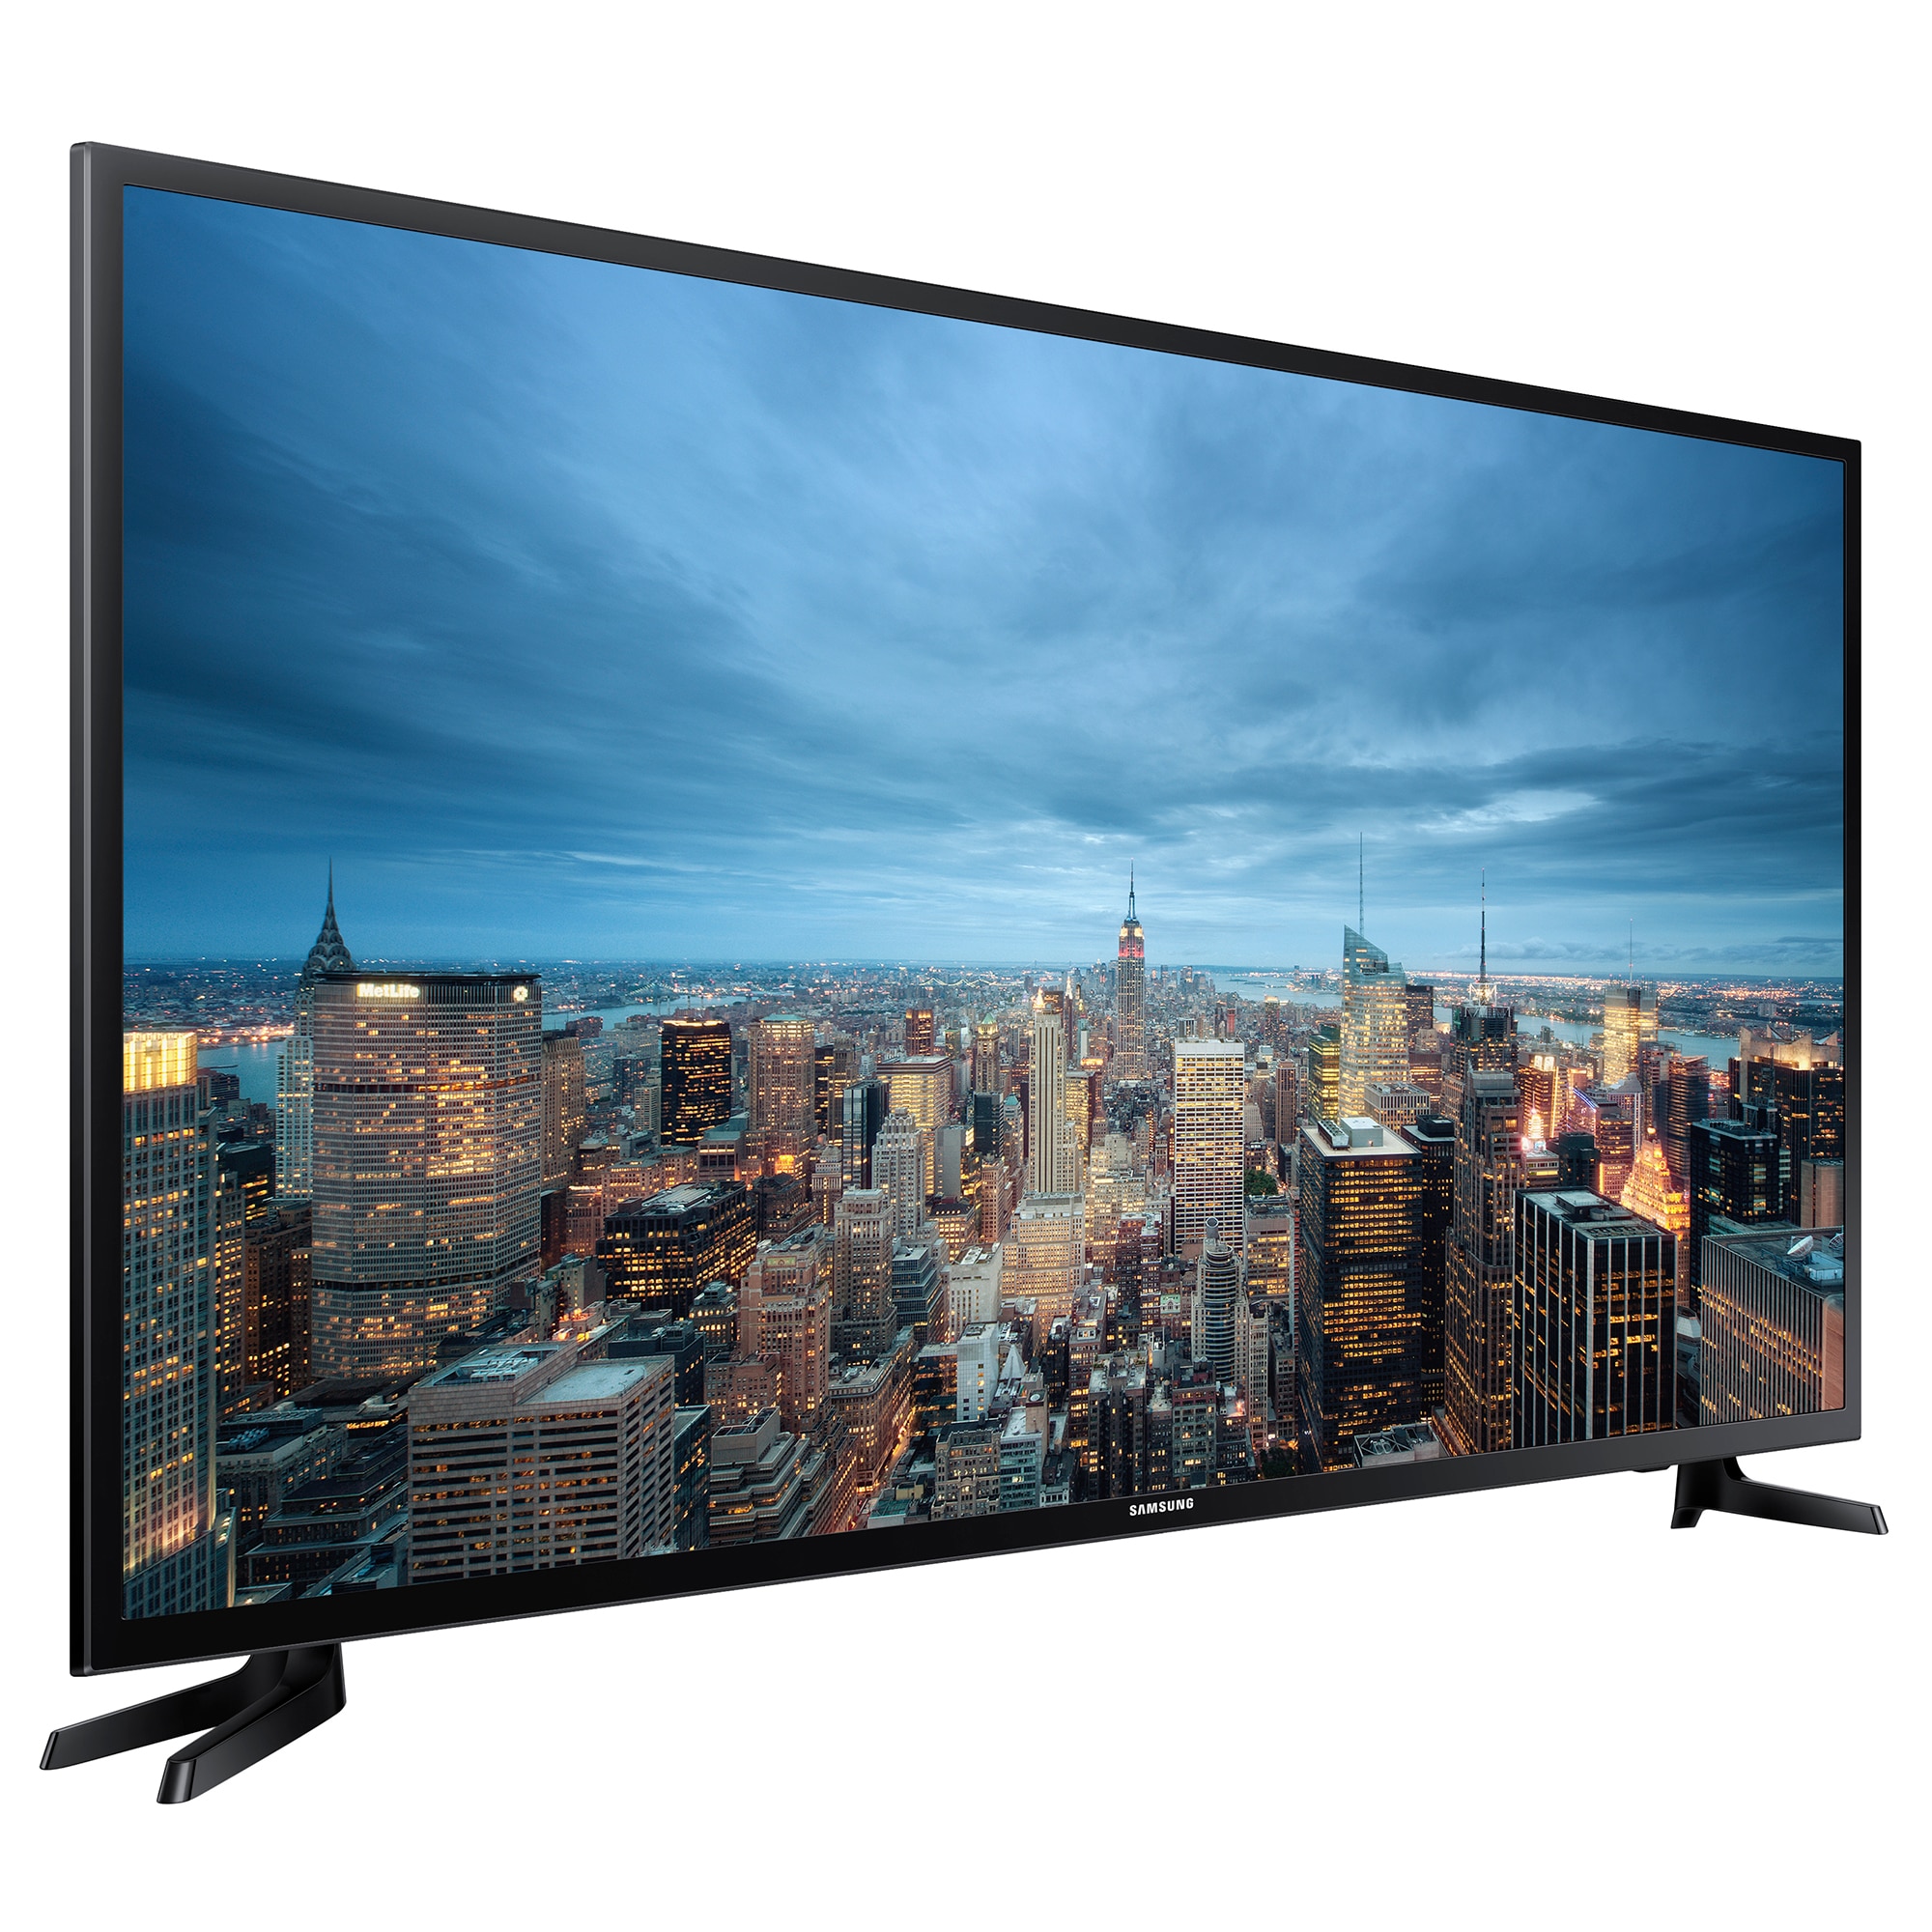 Купить телевизор в магазине самсунг. Samsung ue55ju6530u. Samsung ue43ju6000u. Samsung Smart TV 40. Телевизор Samsung ue48ju6000u 48" (2015).